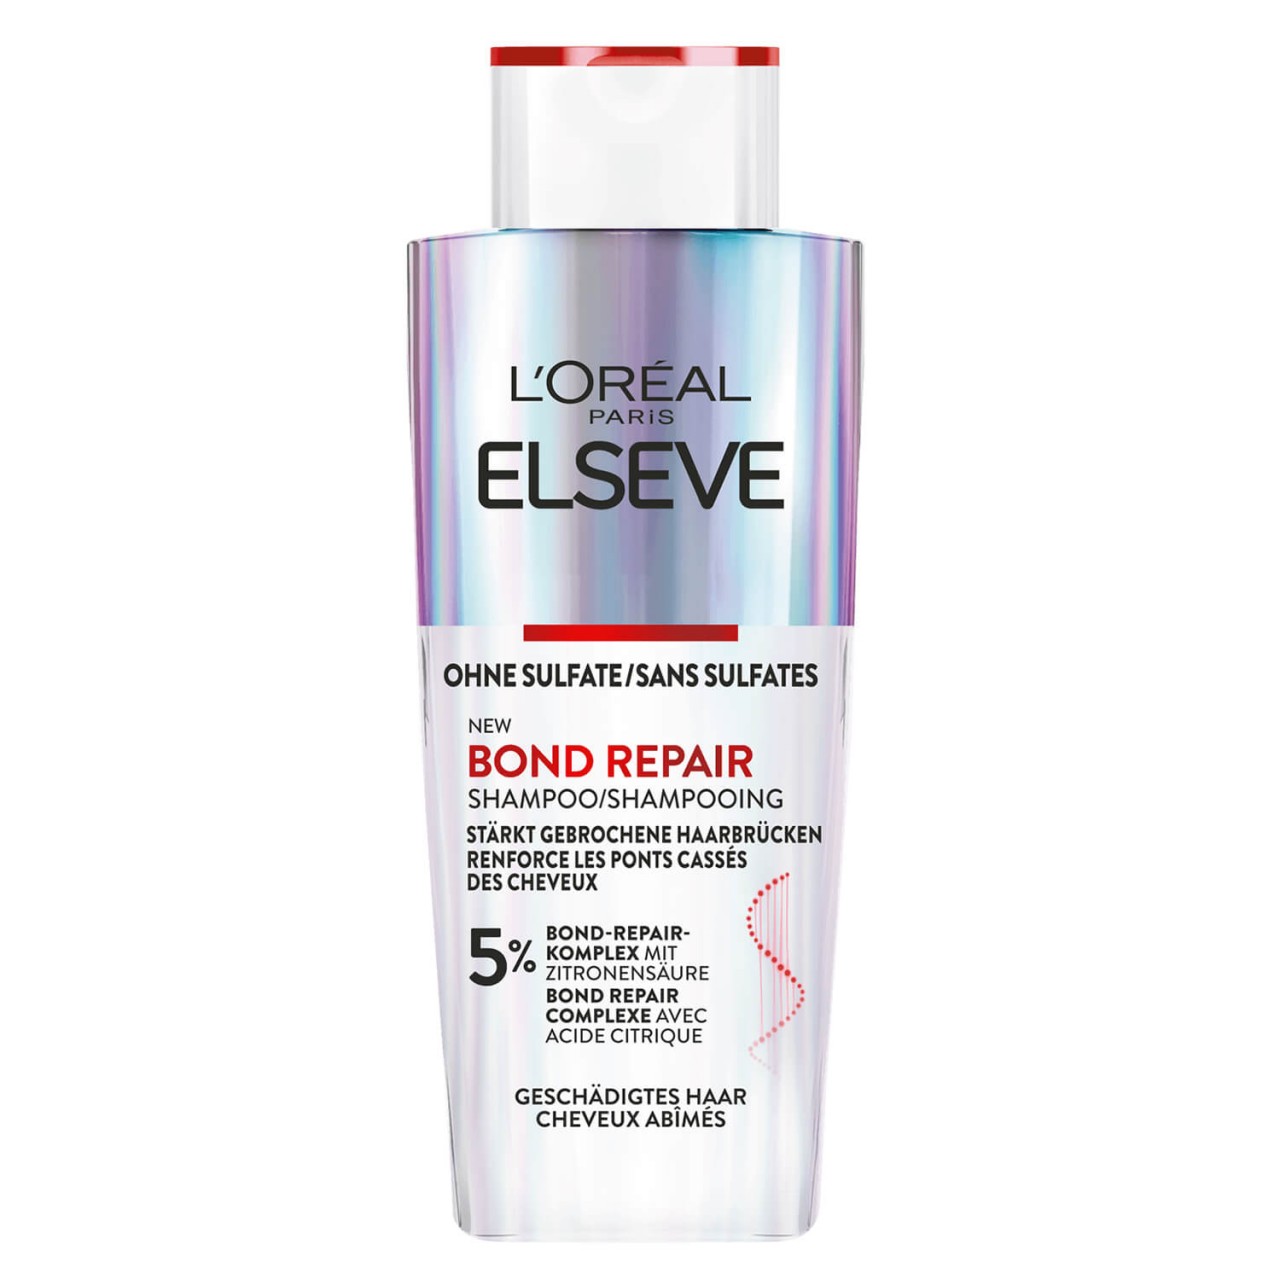 LOréal Elseve Haircare - Bond Repair Shampoo von L'Oréal Paris